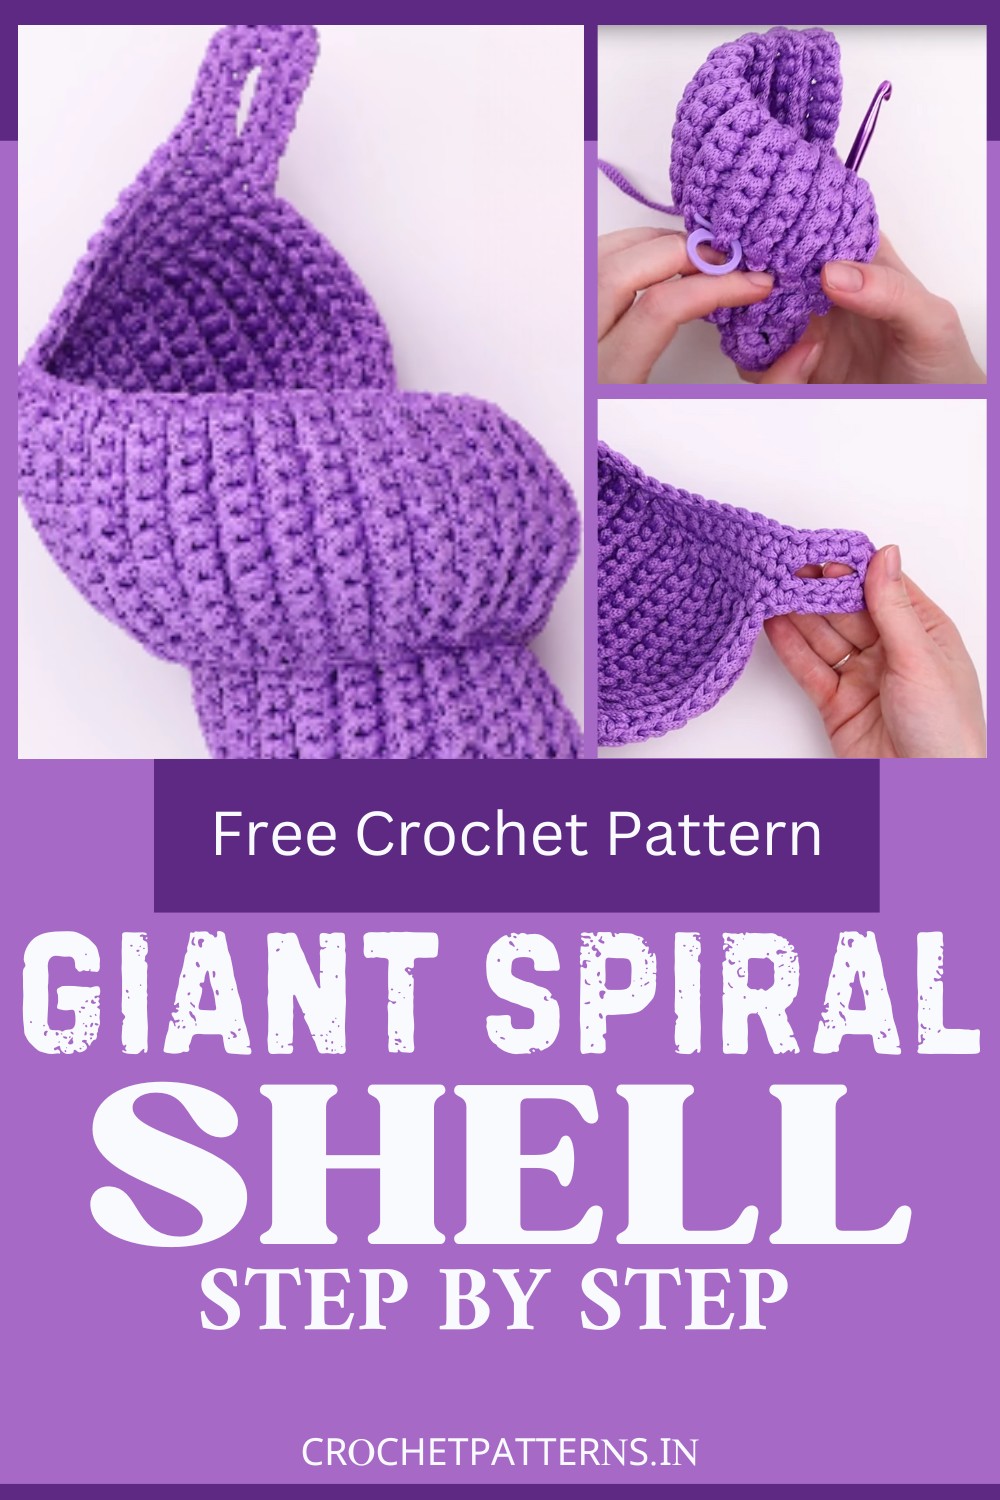 Crochet Giant Spiral Shell